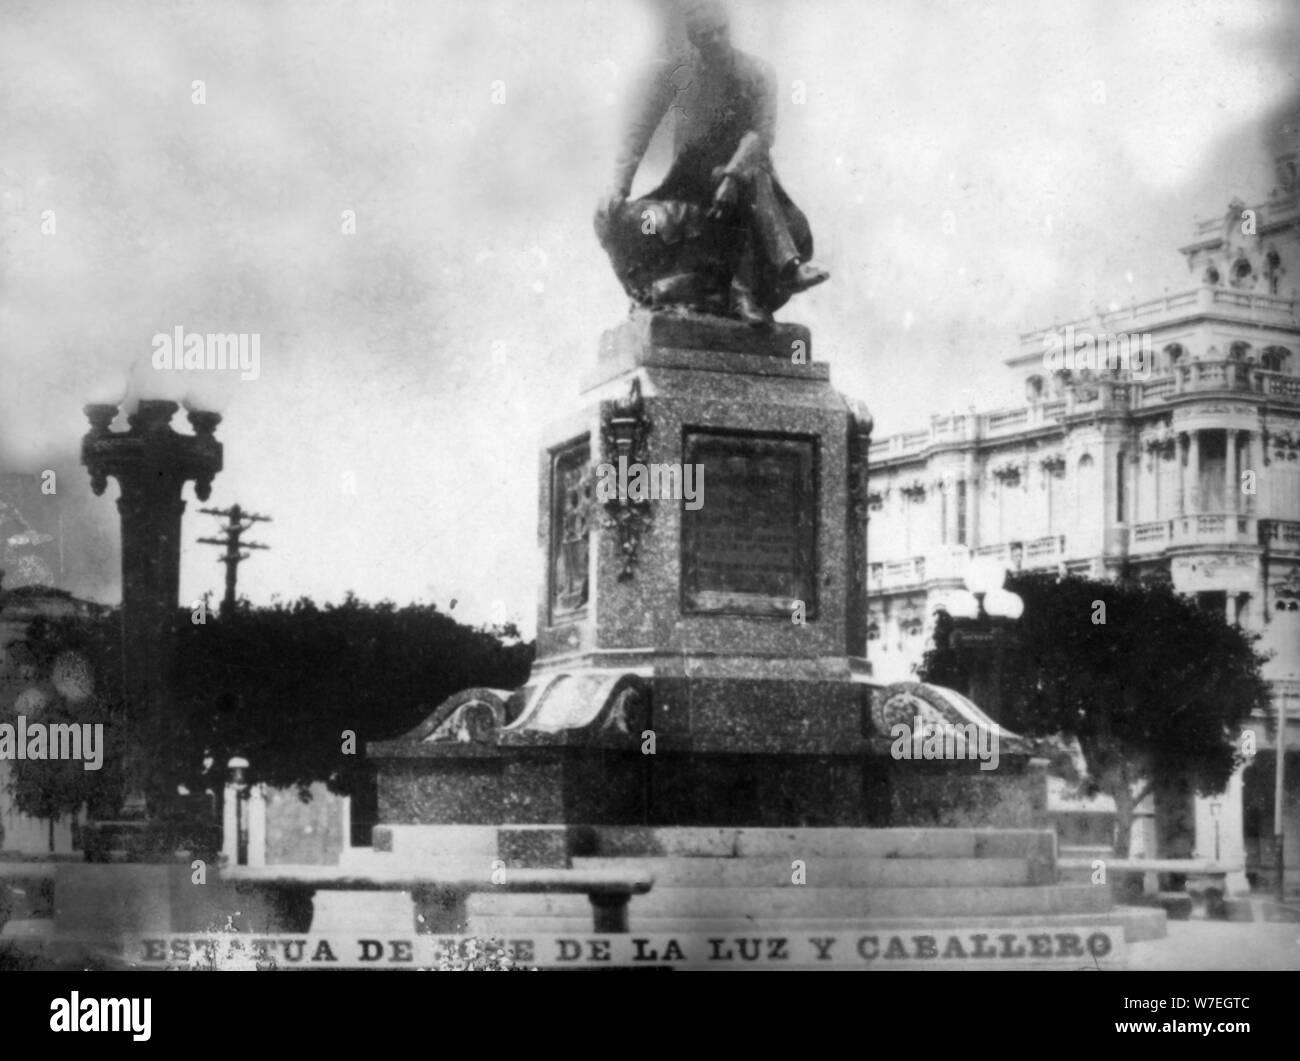 Statue of Don Jose de la Luz Caballero, (1912), 1920s. Artist: Unknown Stock Photo